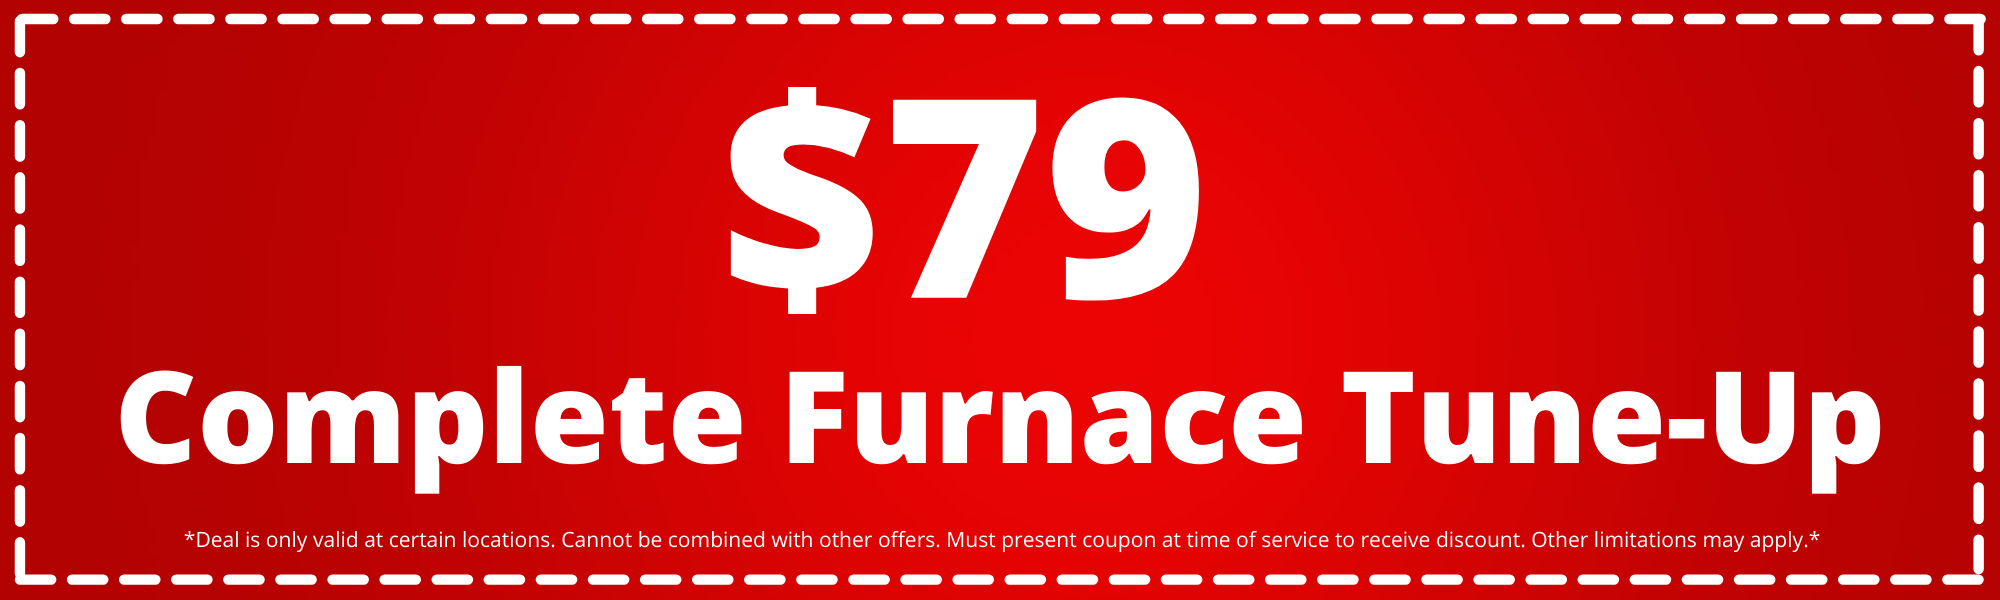 furnace tune-up sale